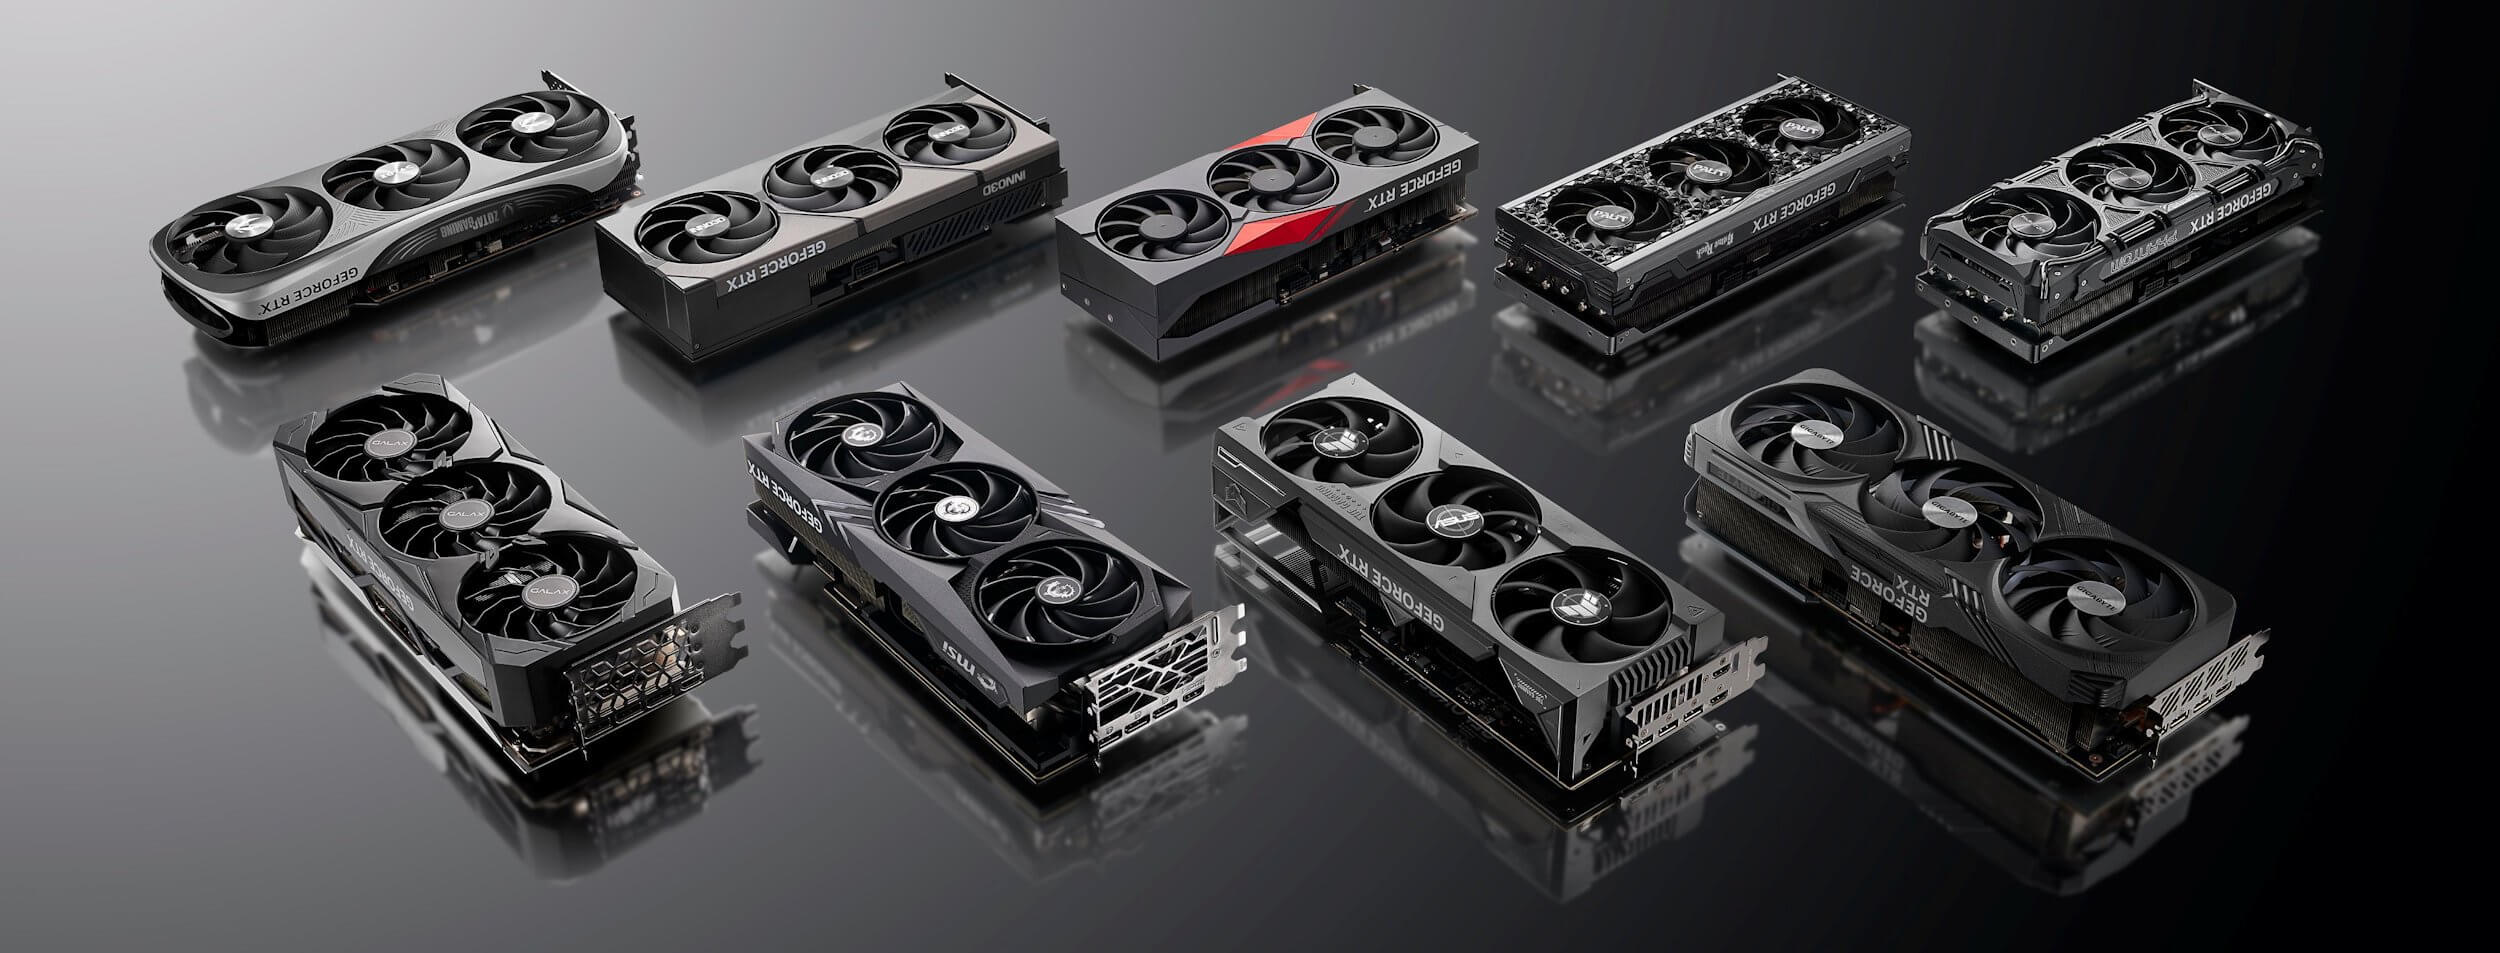 NVIDIA chính thức giới thiệu dòng vi xử lý đồ hoạ GeForce RTX 40